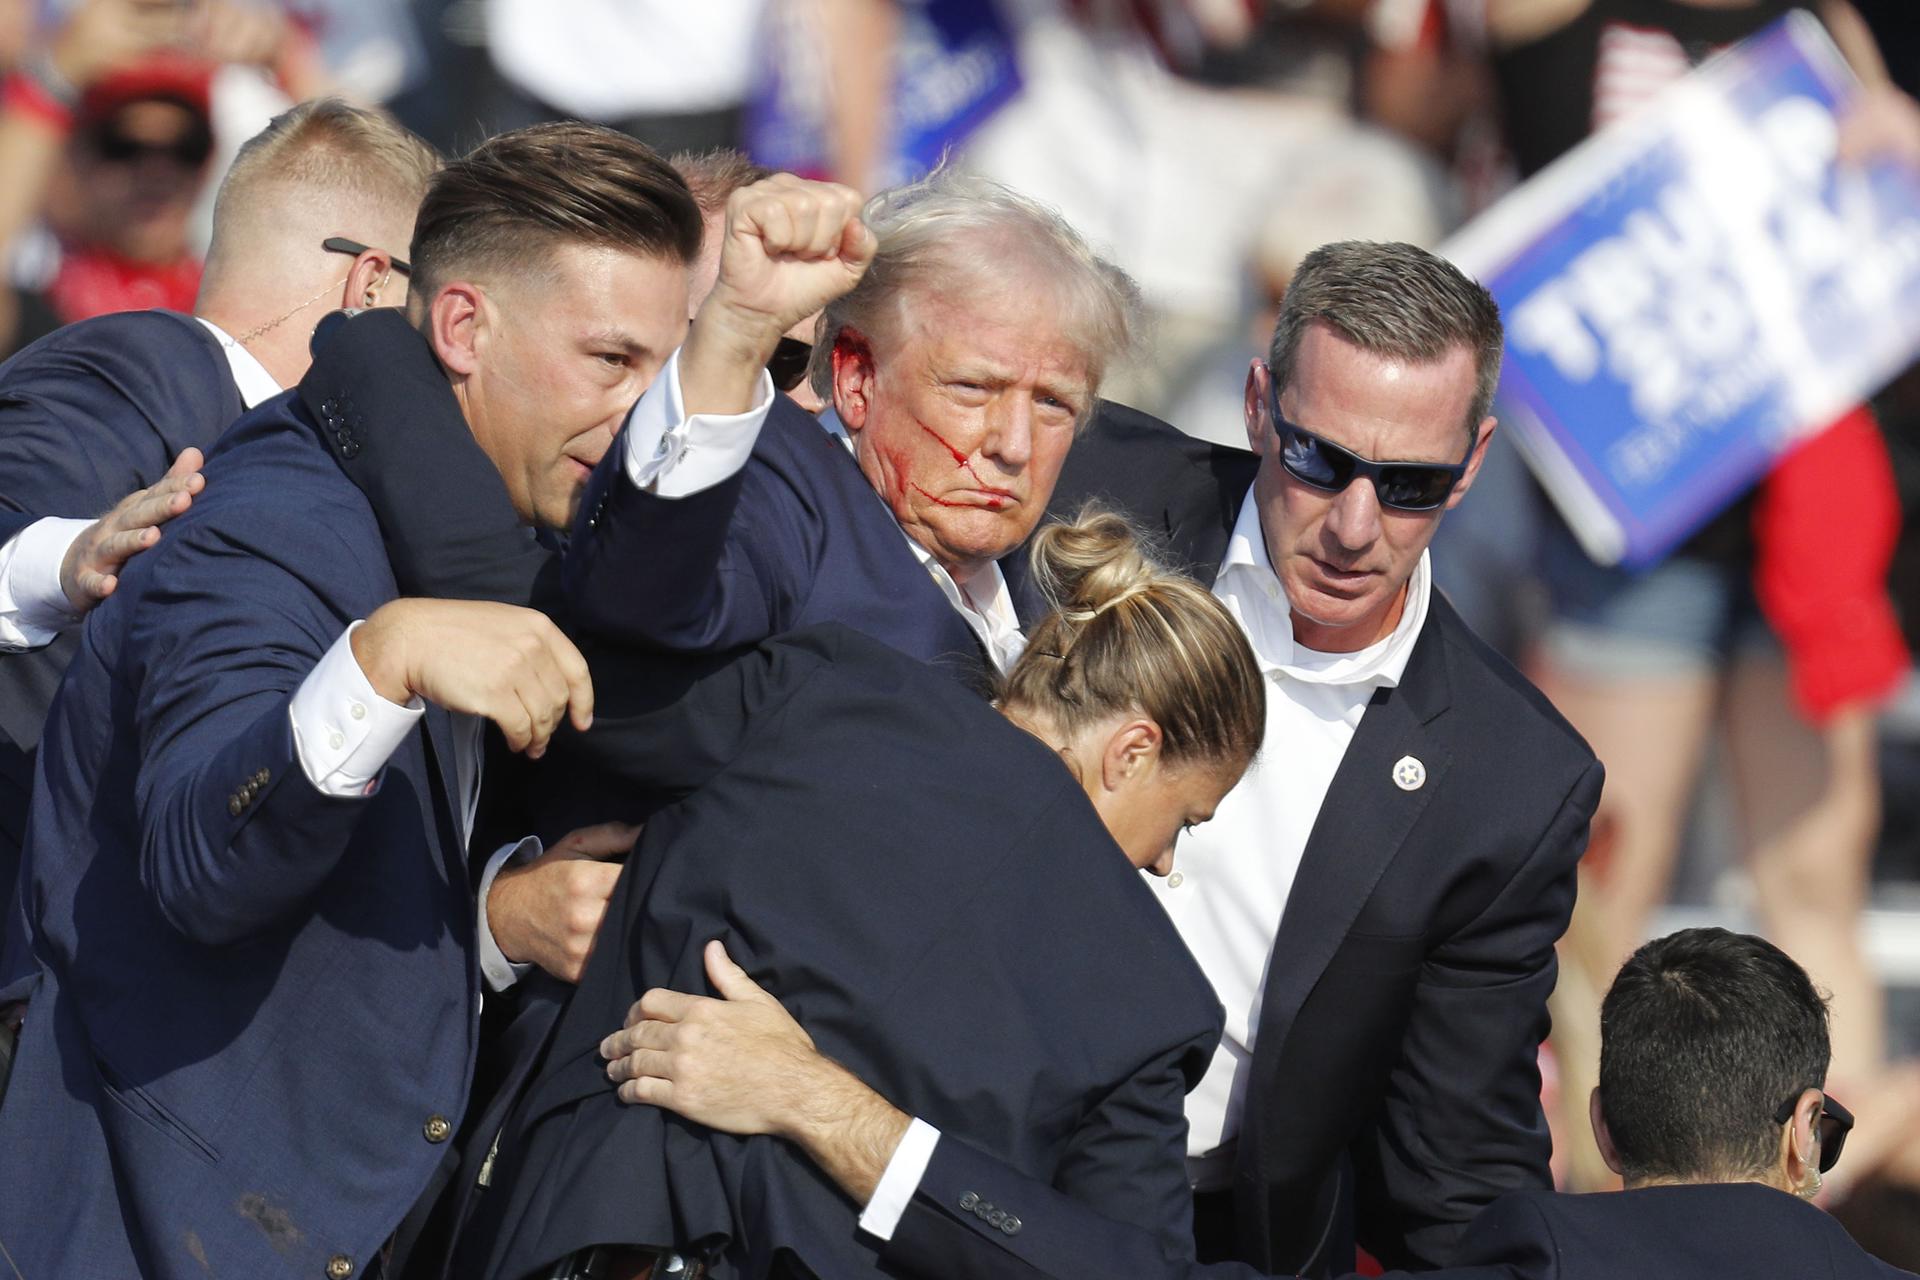 El ex presidente estadounidense Donald Trump es sacado del escenario por el Servicio Secreto tras un incidente durante un mitin de campaña en el Butler Farm Show Inc. en Butler, Pensilvania (Estados Unidos). Imagen de archivo. EFE/EPA/DAVID MAXWELL